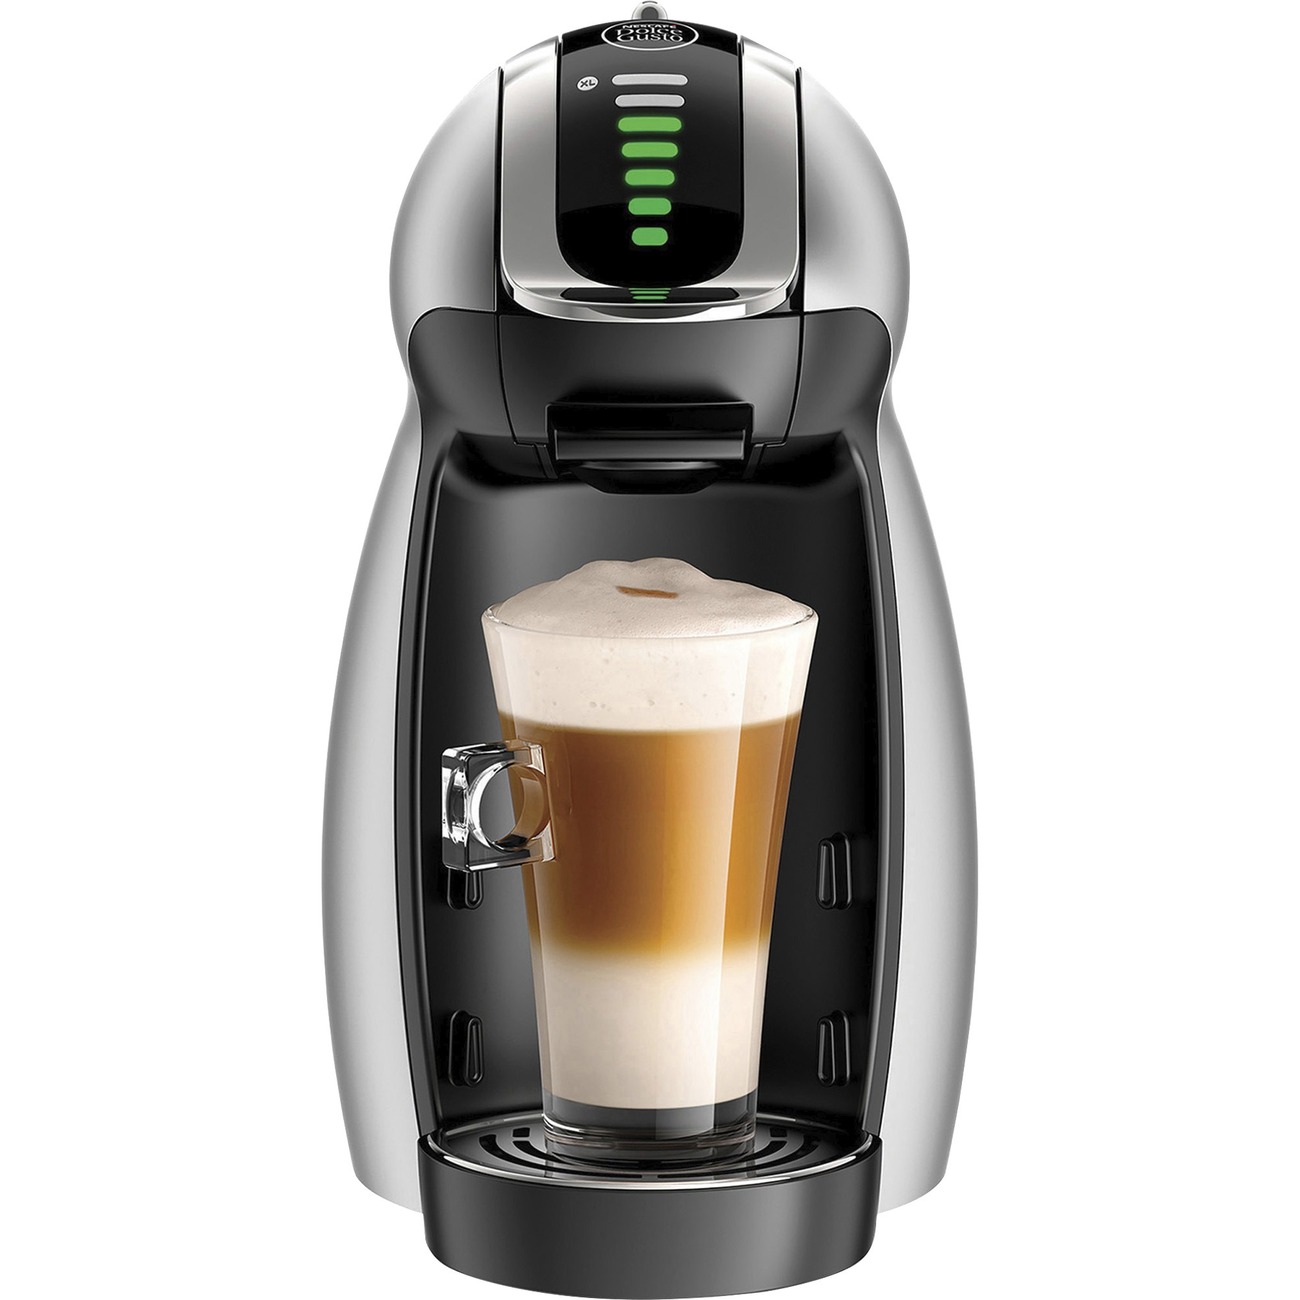 Fluisteren Verplicht Conform NES65198 - Nescafe Dolce Gusto Genio 2 Coffee Machine - Programmable15  barSingle-serve - Dolce Gusto Pod/Capsule Brand - Black - Office Supply Hut